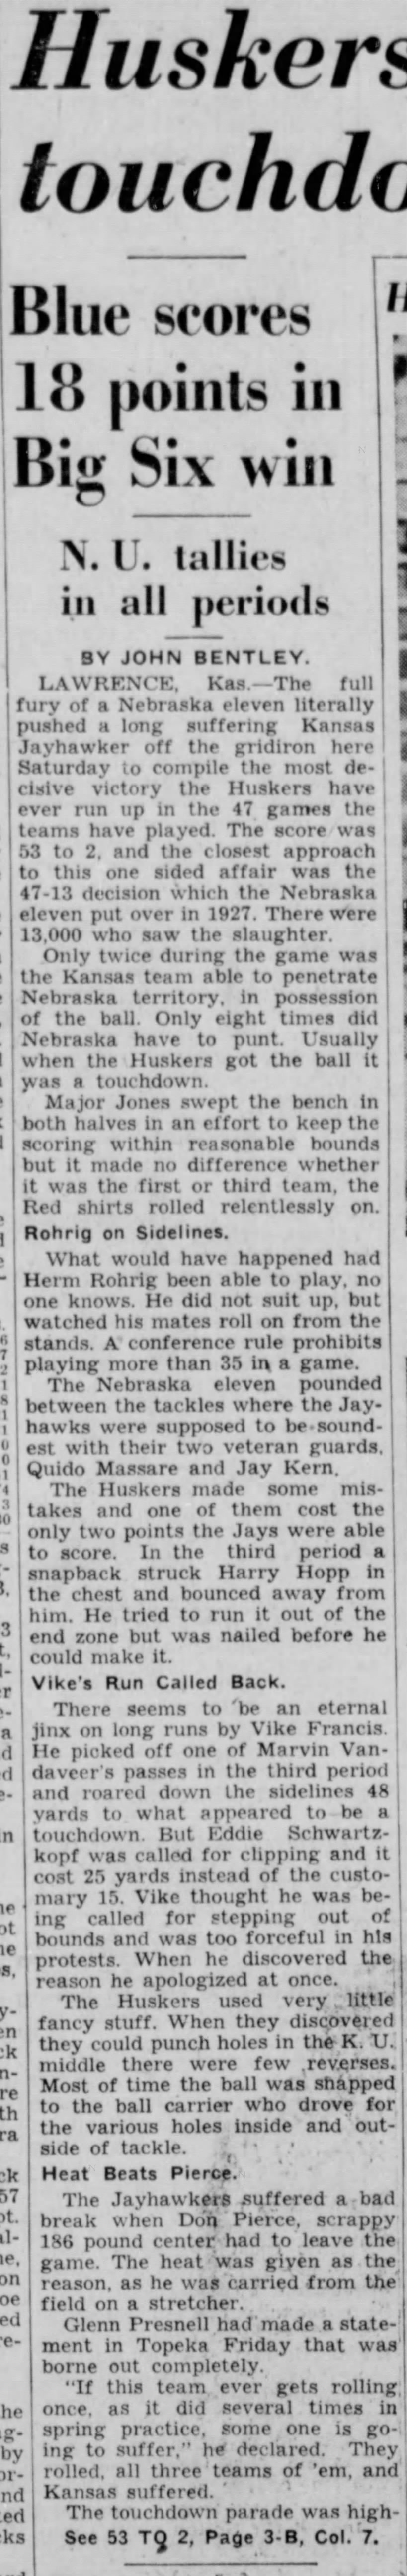 1940 Nebraska-Kansas football, part 1